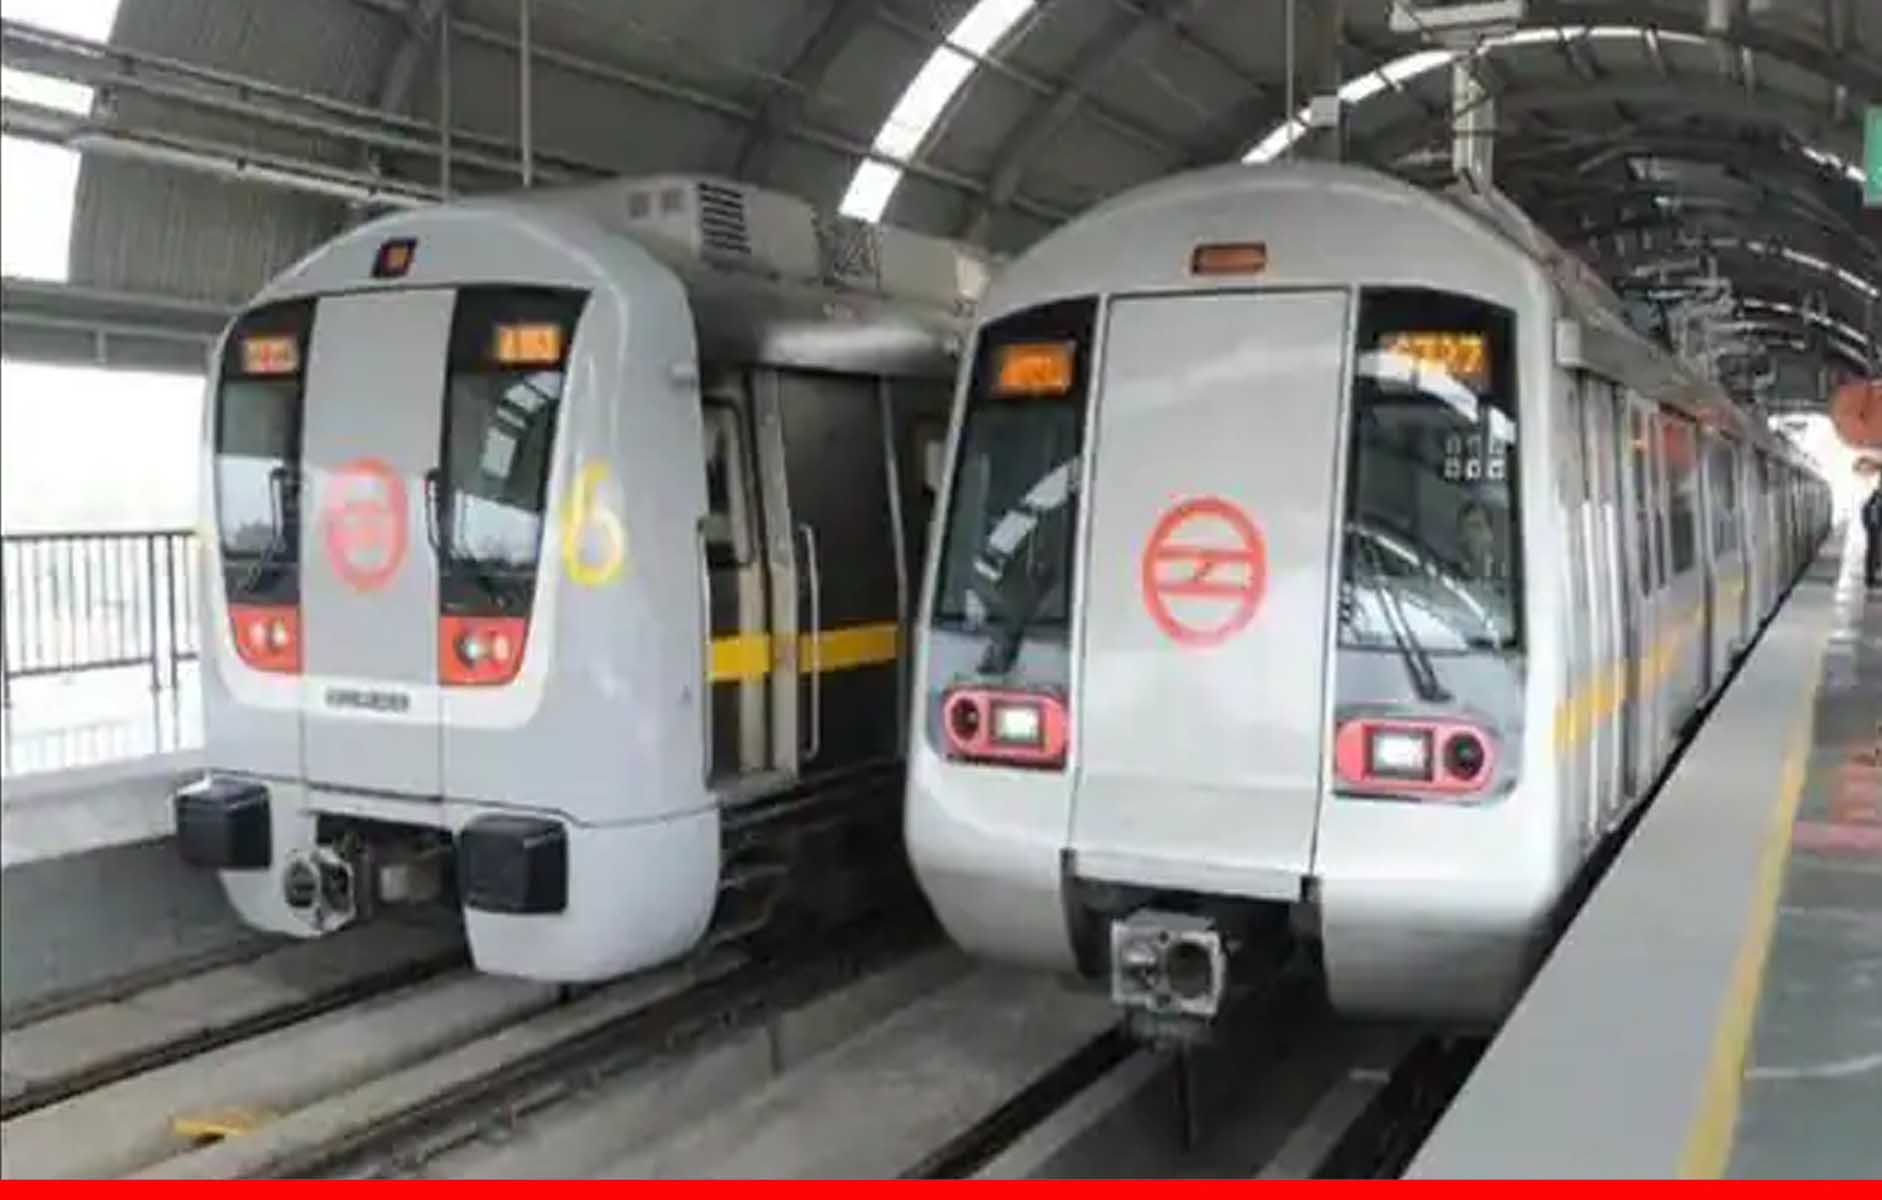 दिल्ली मेट्रो में अब स्मार्ट कार्ड और टोकन की जरूरत नहीं, जानिए क्या नया प्लान